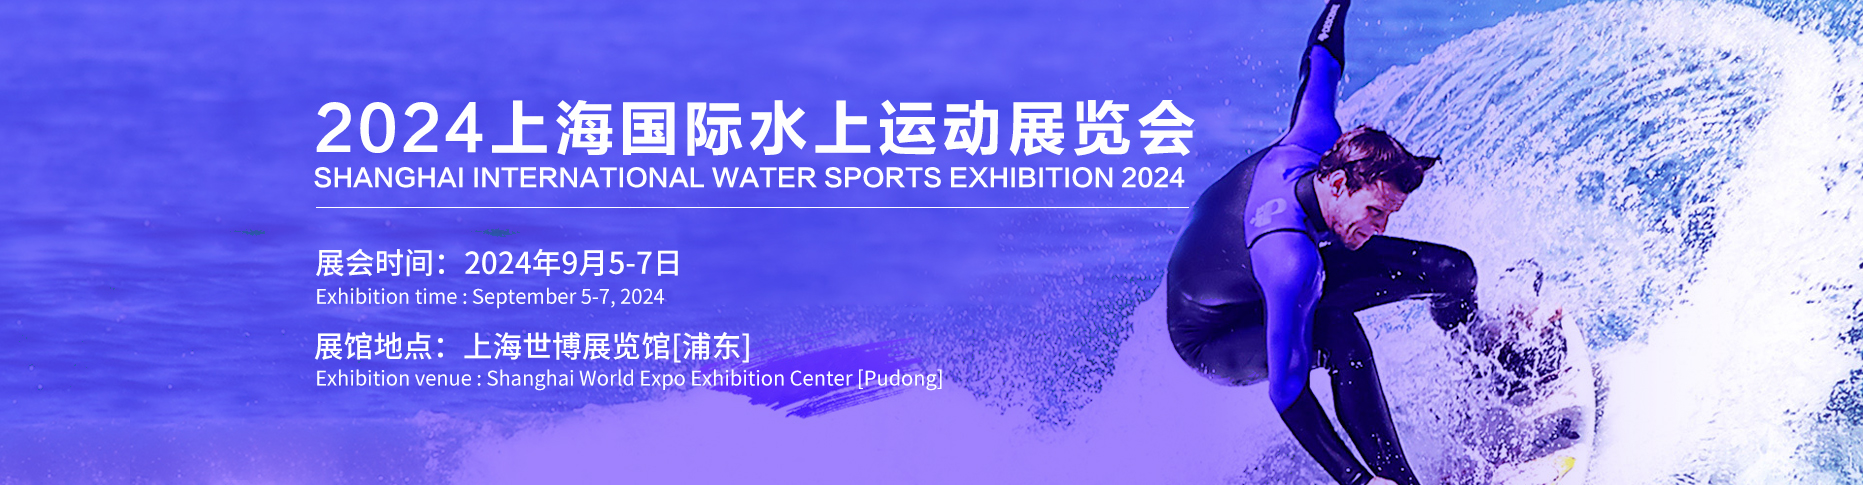 2024上海国际水上运动展览会-供商网